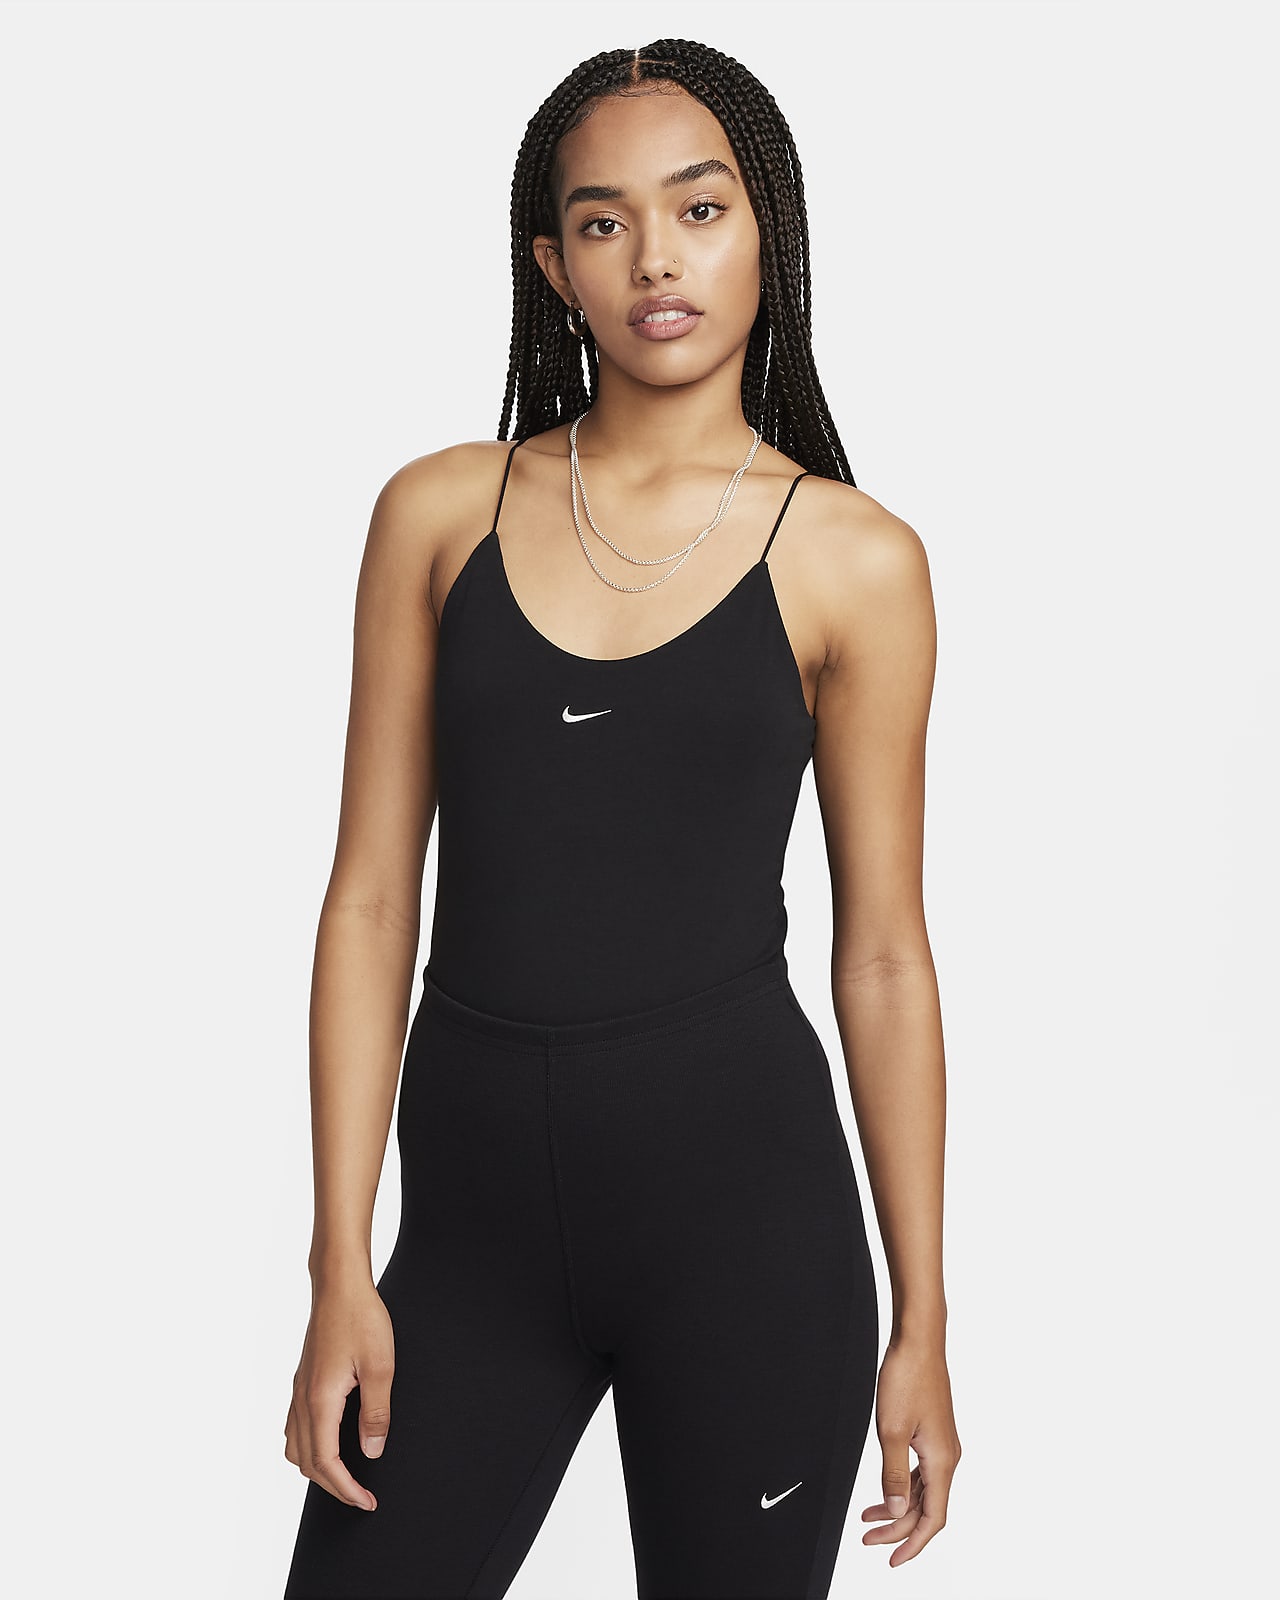 Nike Sportswear Chill Knit Women's Tight Cami Bodysuit.